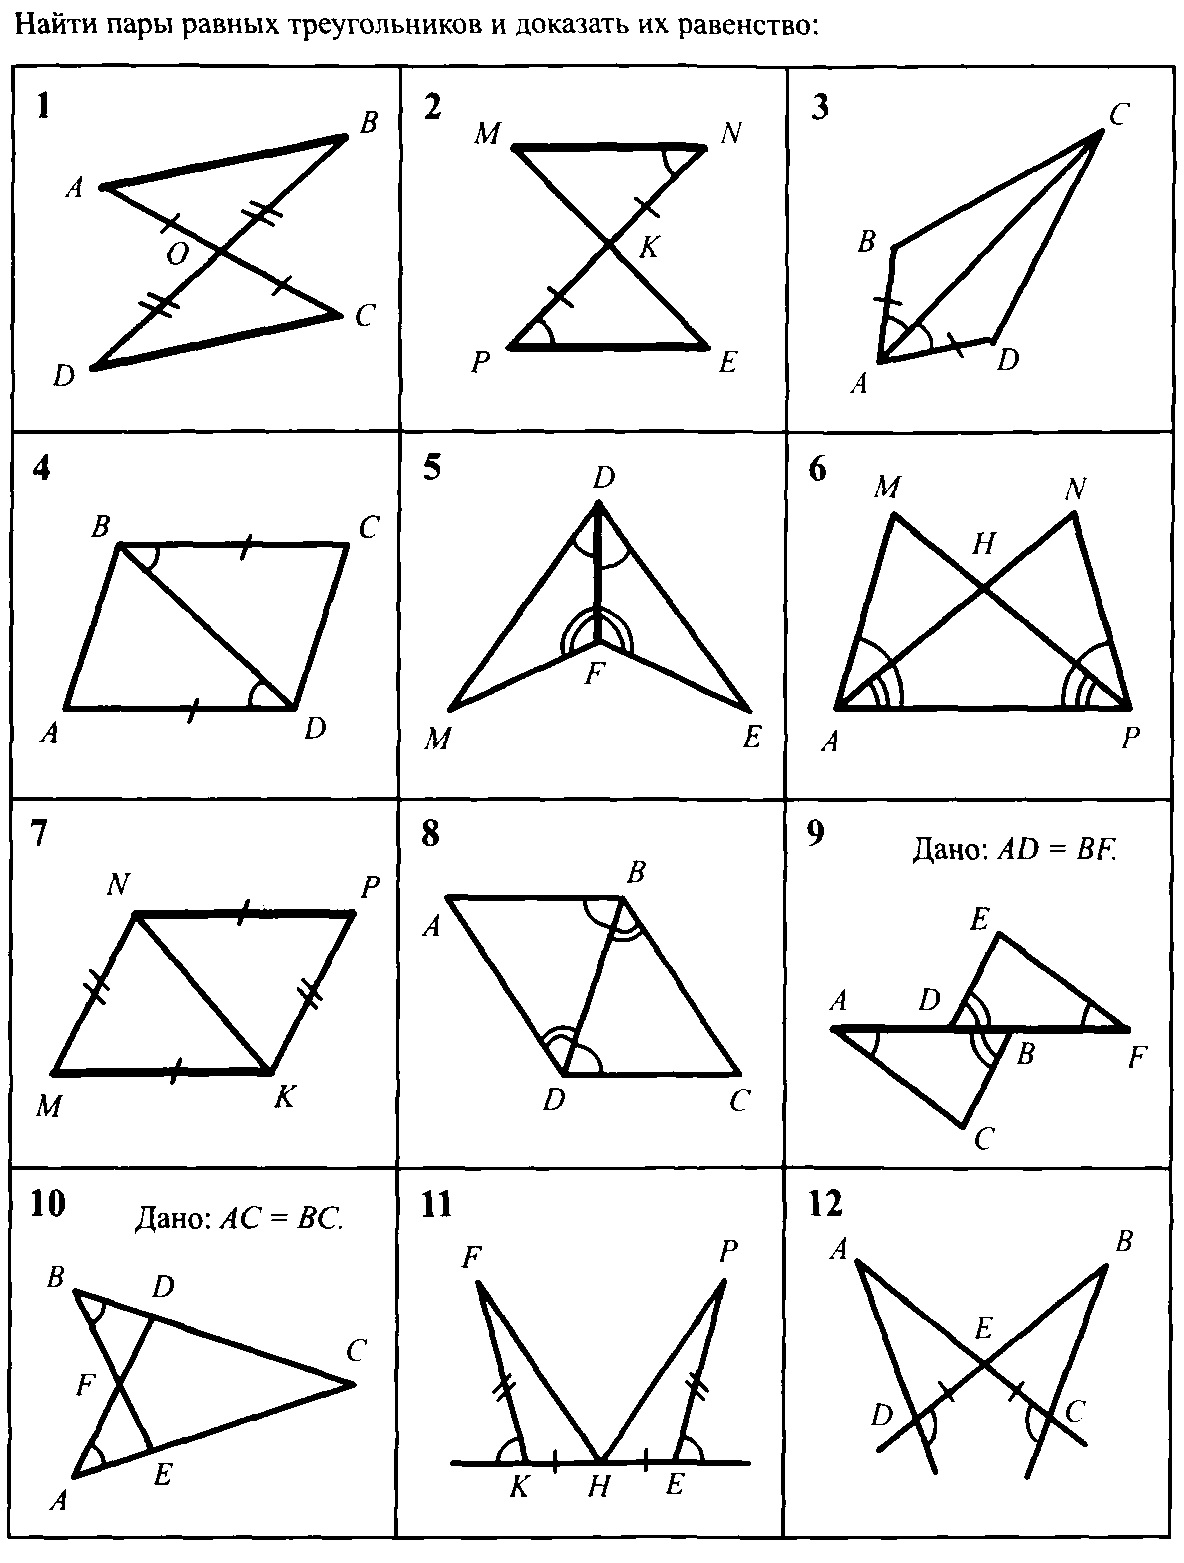 Задачи на чертежах 7 классы. Задачи на равенство треугольников по готовым чертежам. 1 Признак равенства треугольников задачи по готовым чертежам. Третий признак равенства треугольников задачи по готовым чертежам. Задачи на доказательство равенства треугольников по 3 признаку.